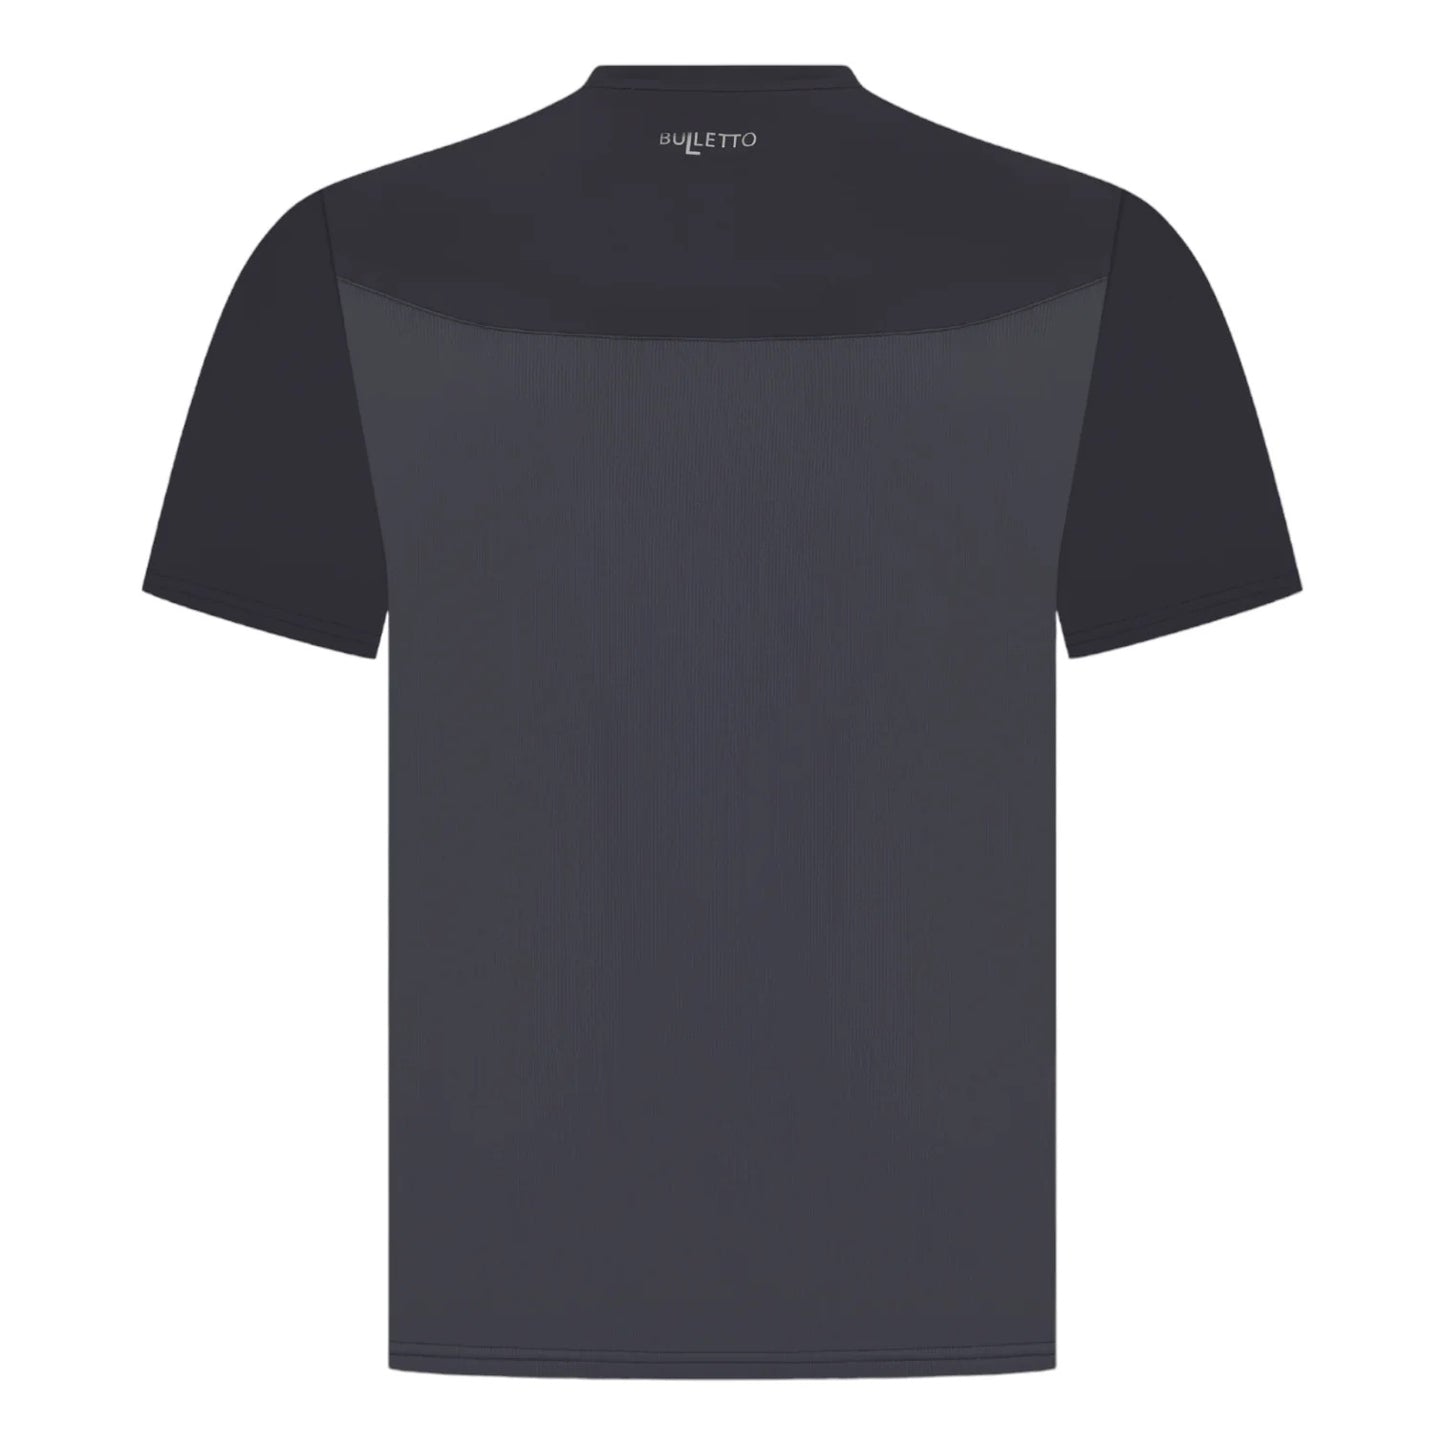 Bulletto Sport Formation Tec Dark Navy/Ink T-Shirt